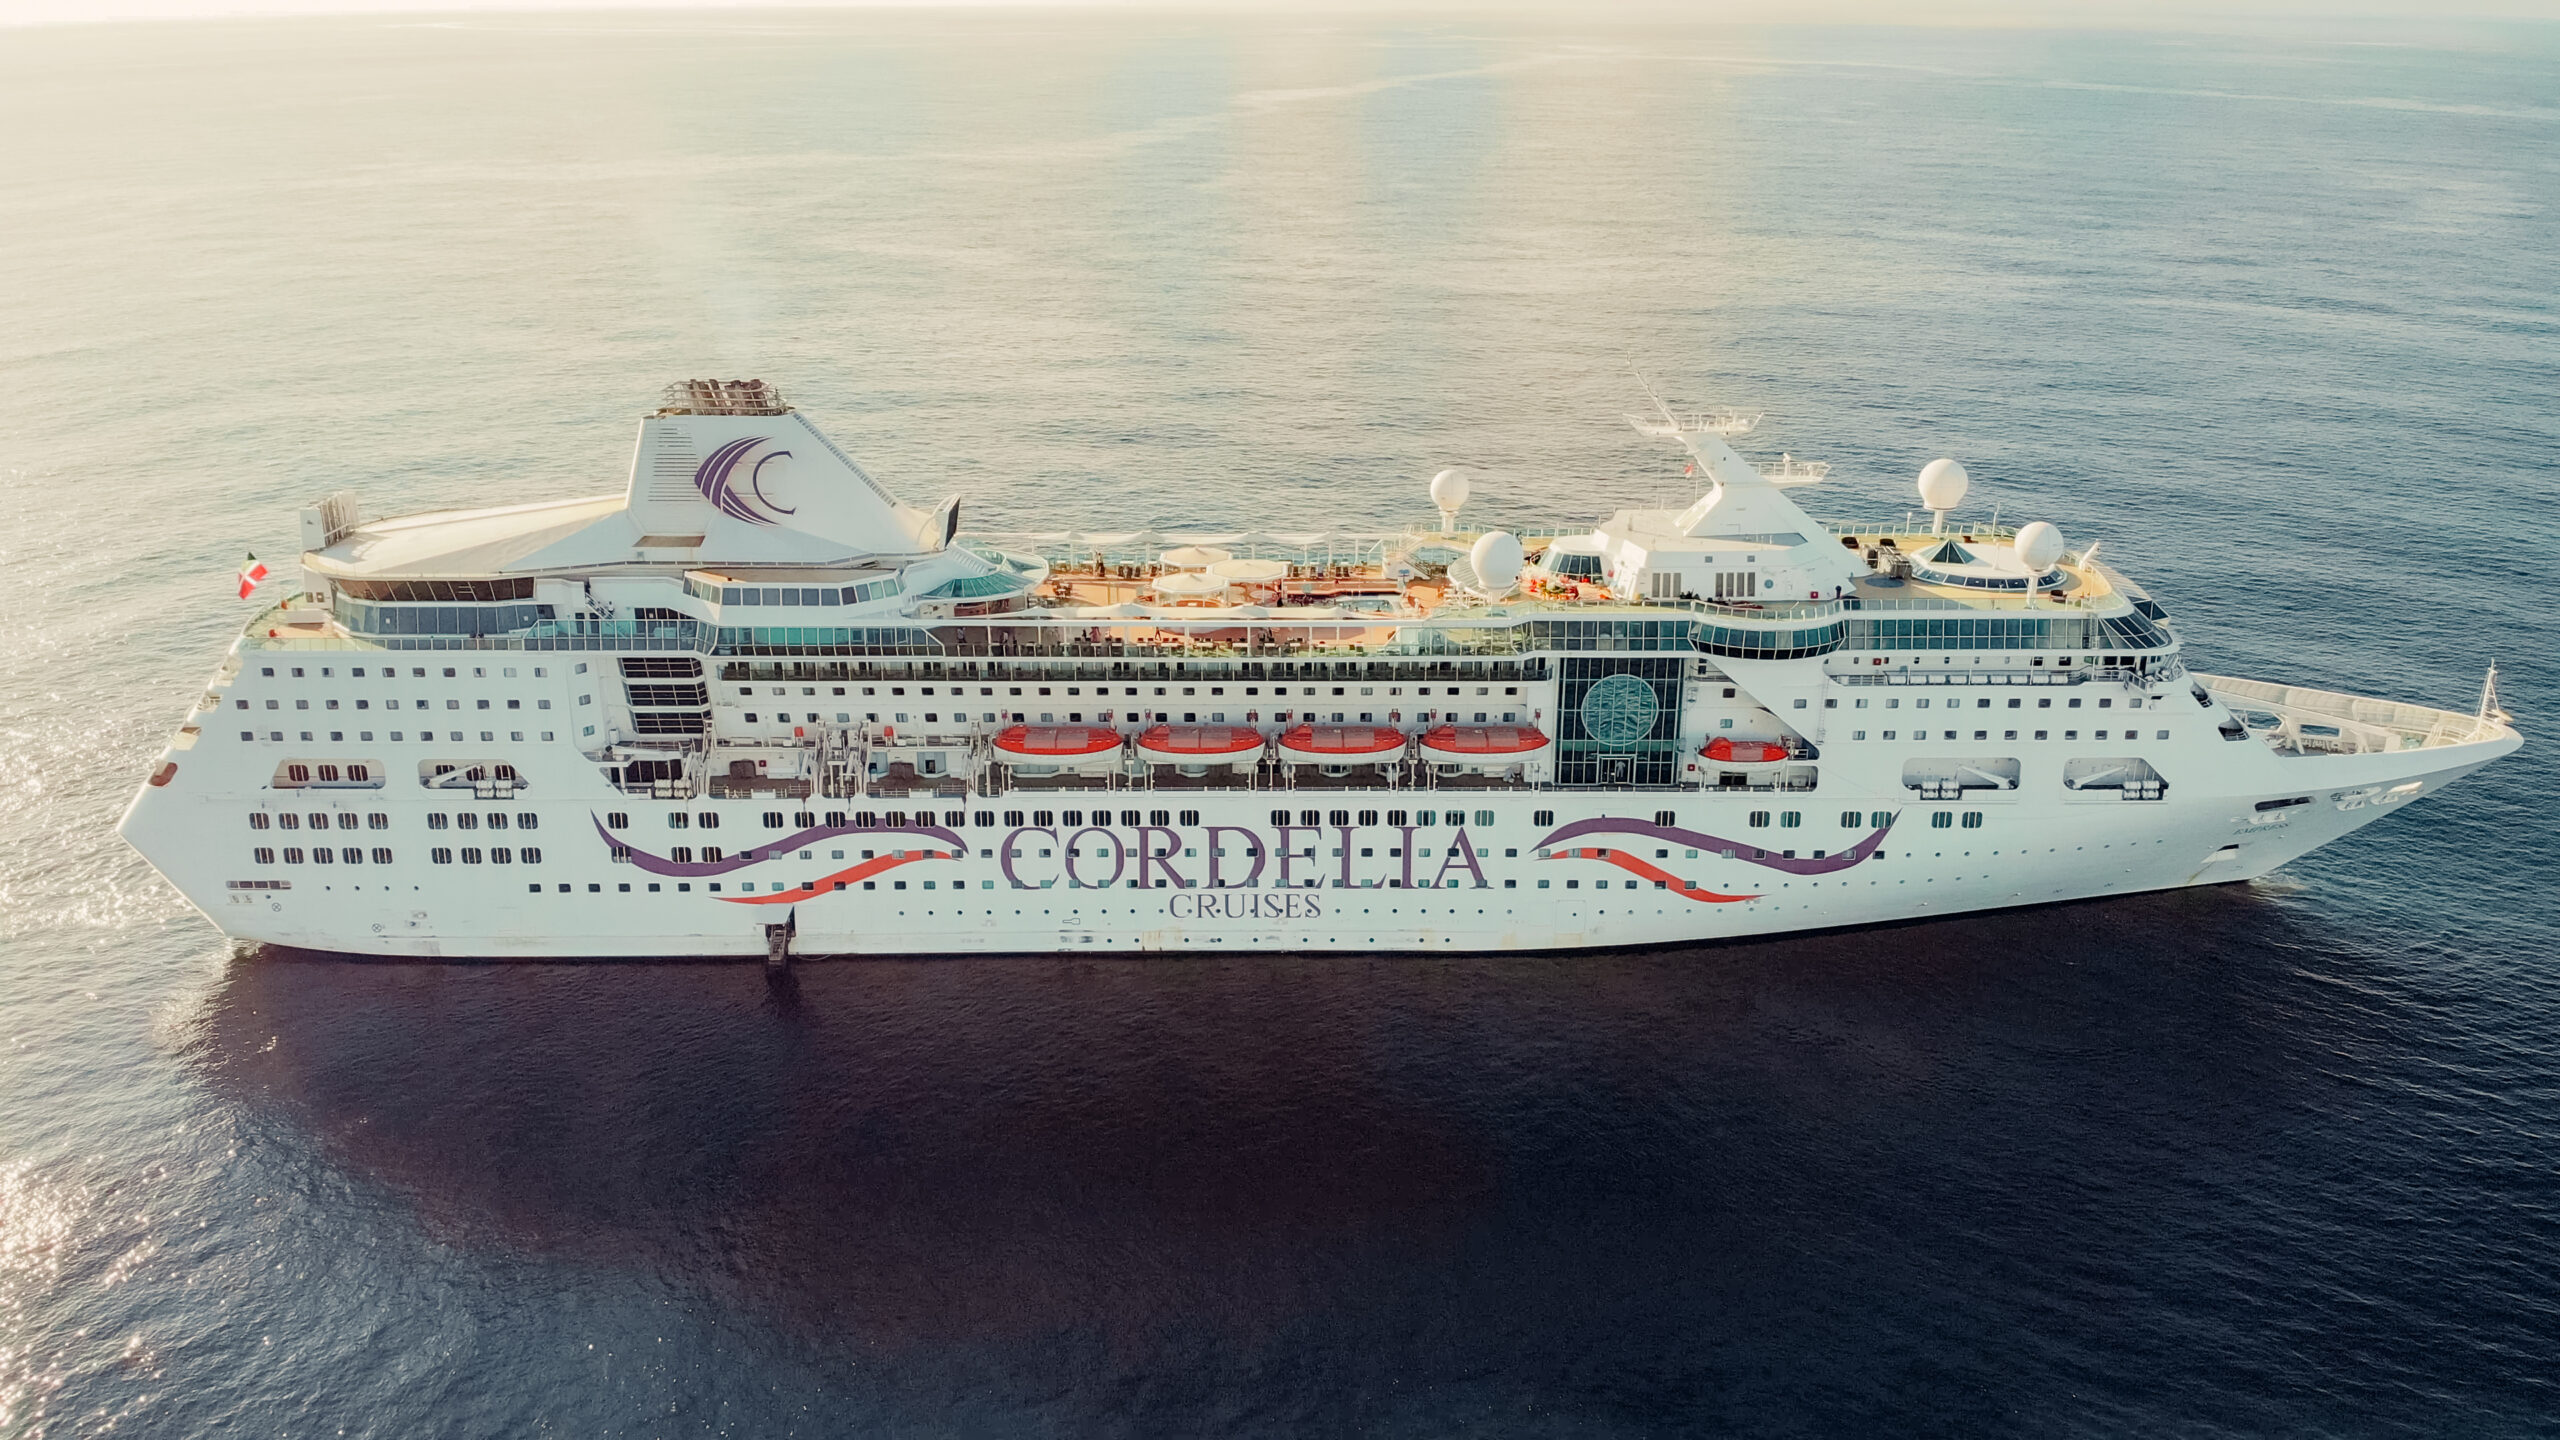 Cordelia Cruises promotes Onam-Independence Day cruise to Sri Lanka